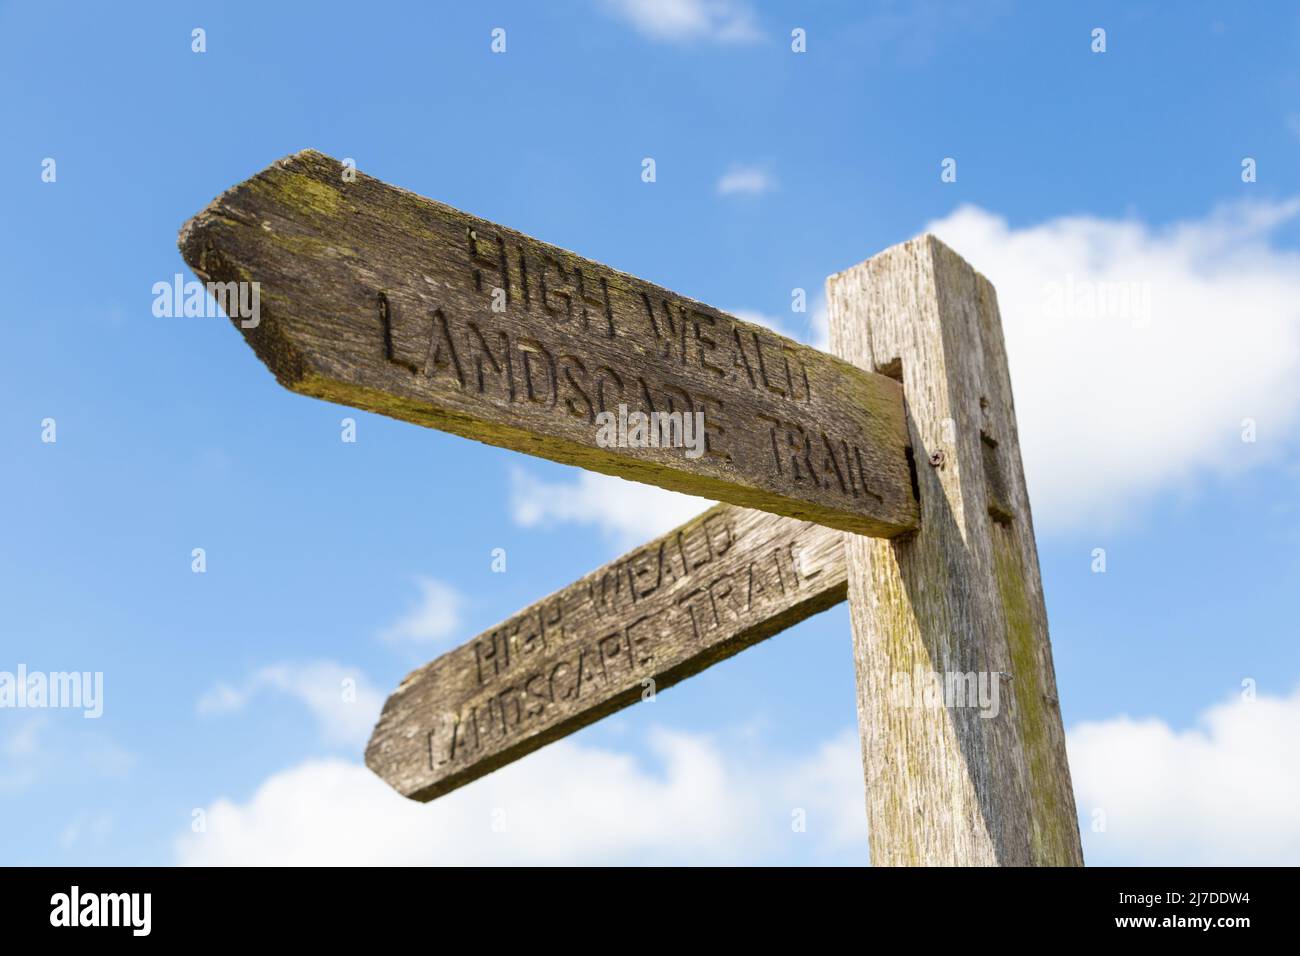 Benenden village high weald landscape trail sign, kent, uk Stock Photo